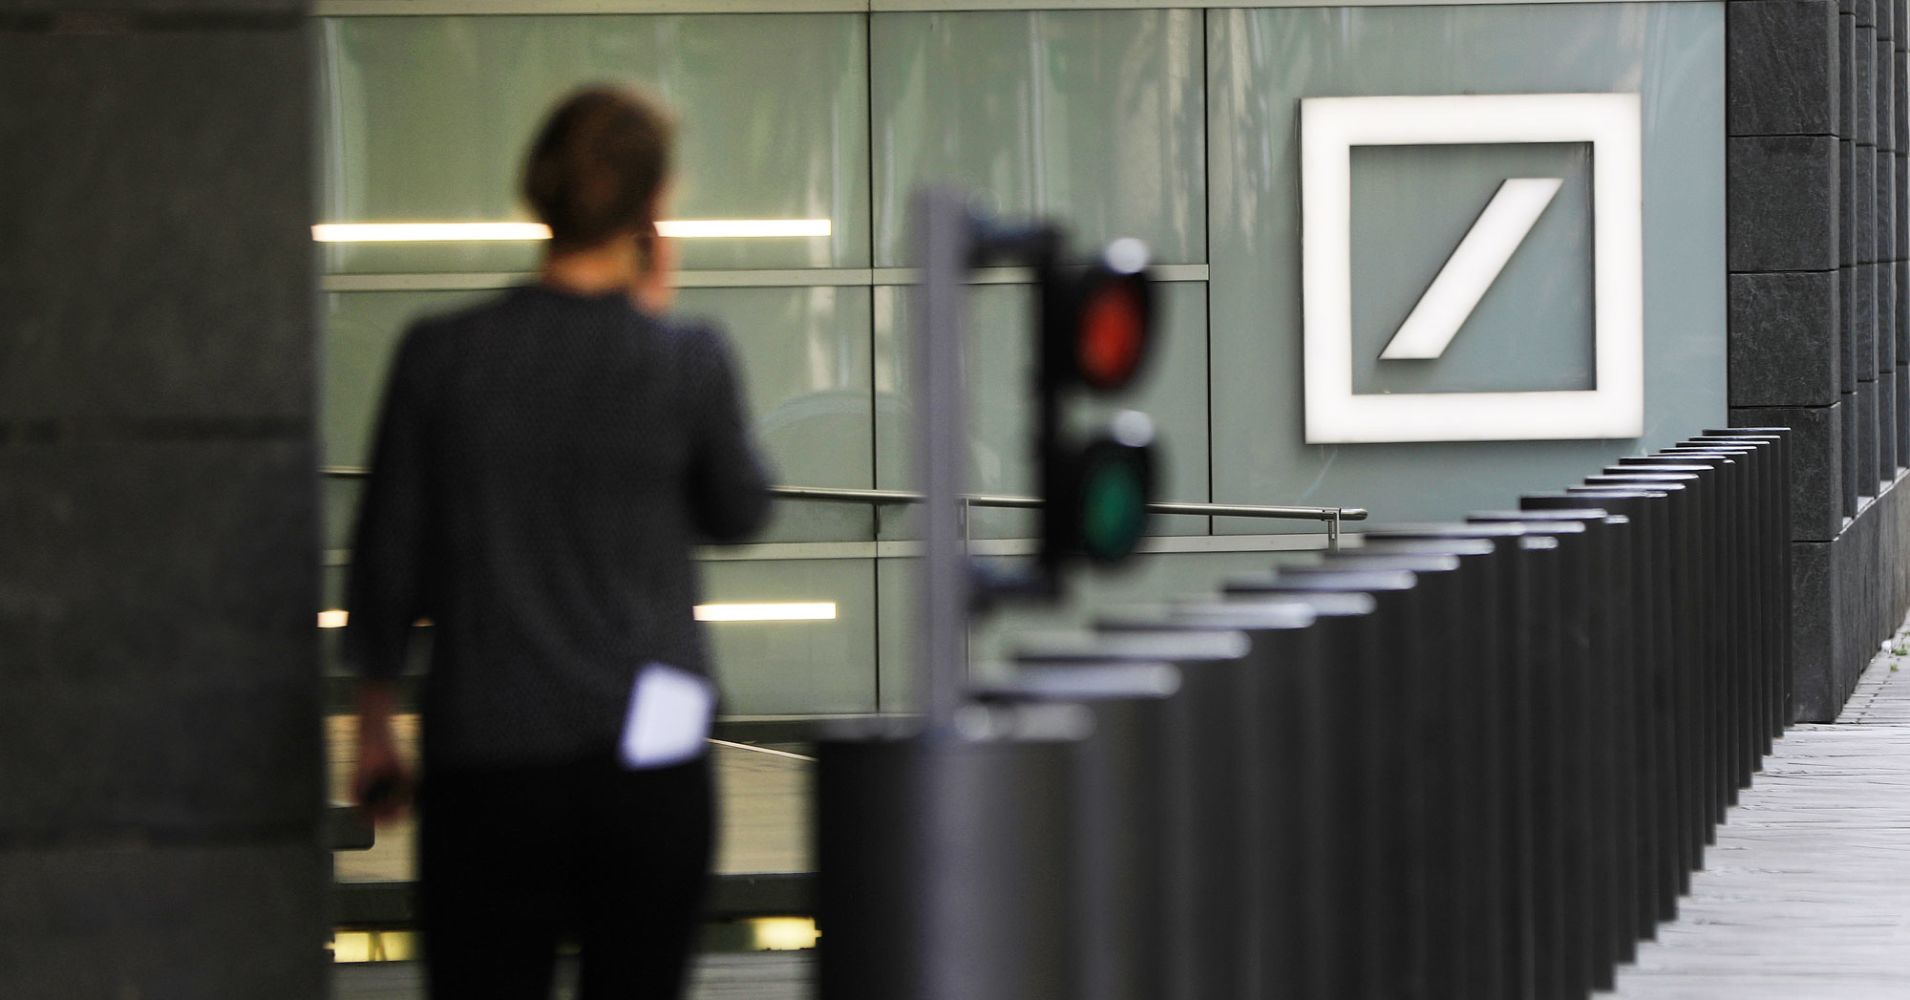 Deutsche Bank shares slip amid $20 billion Russian money-laundering allegations